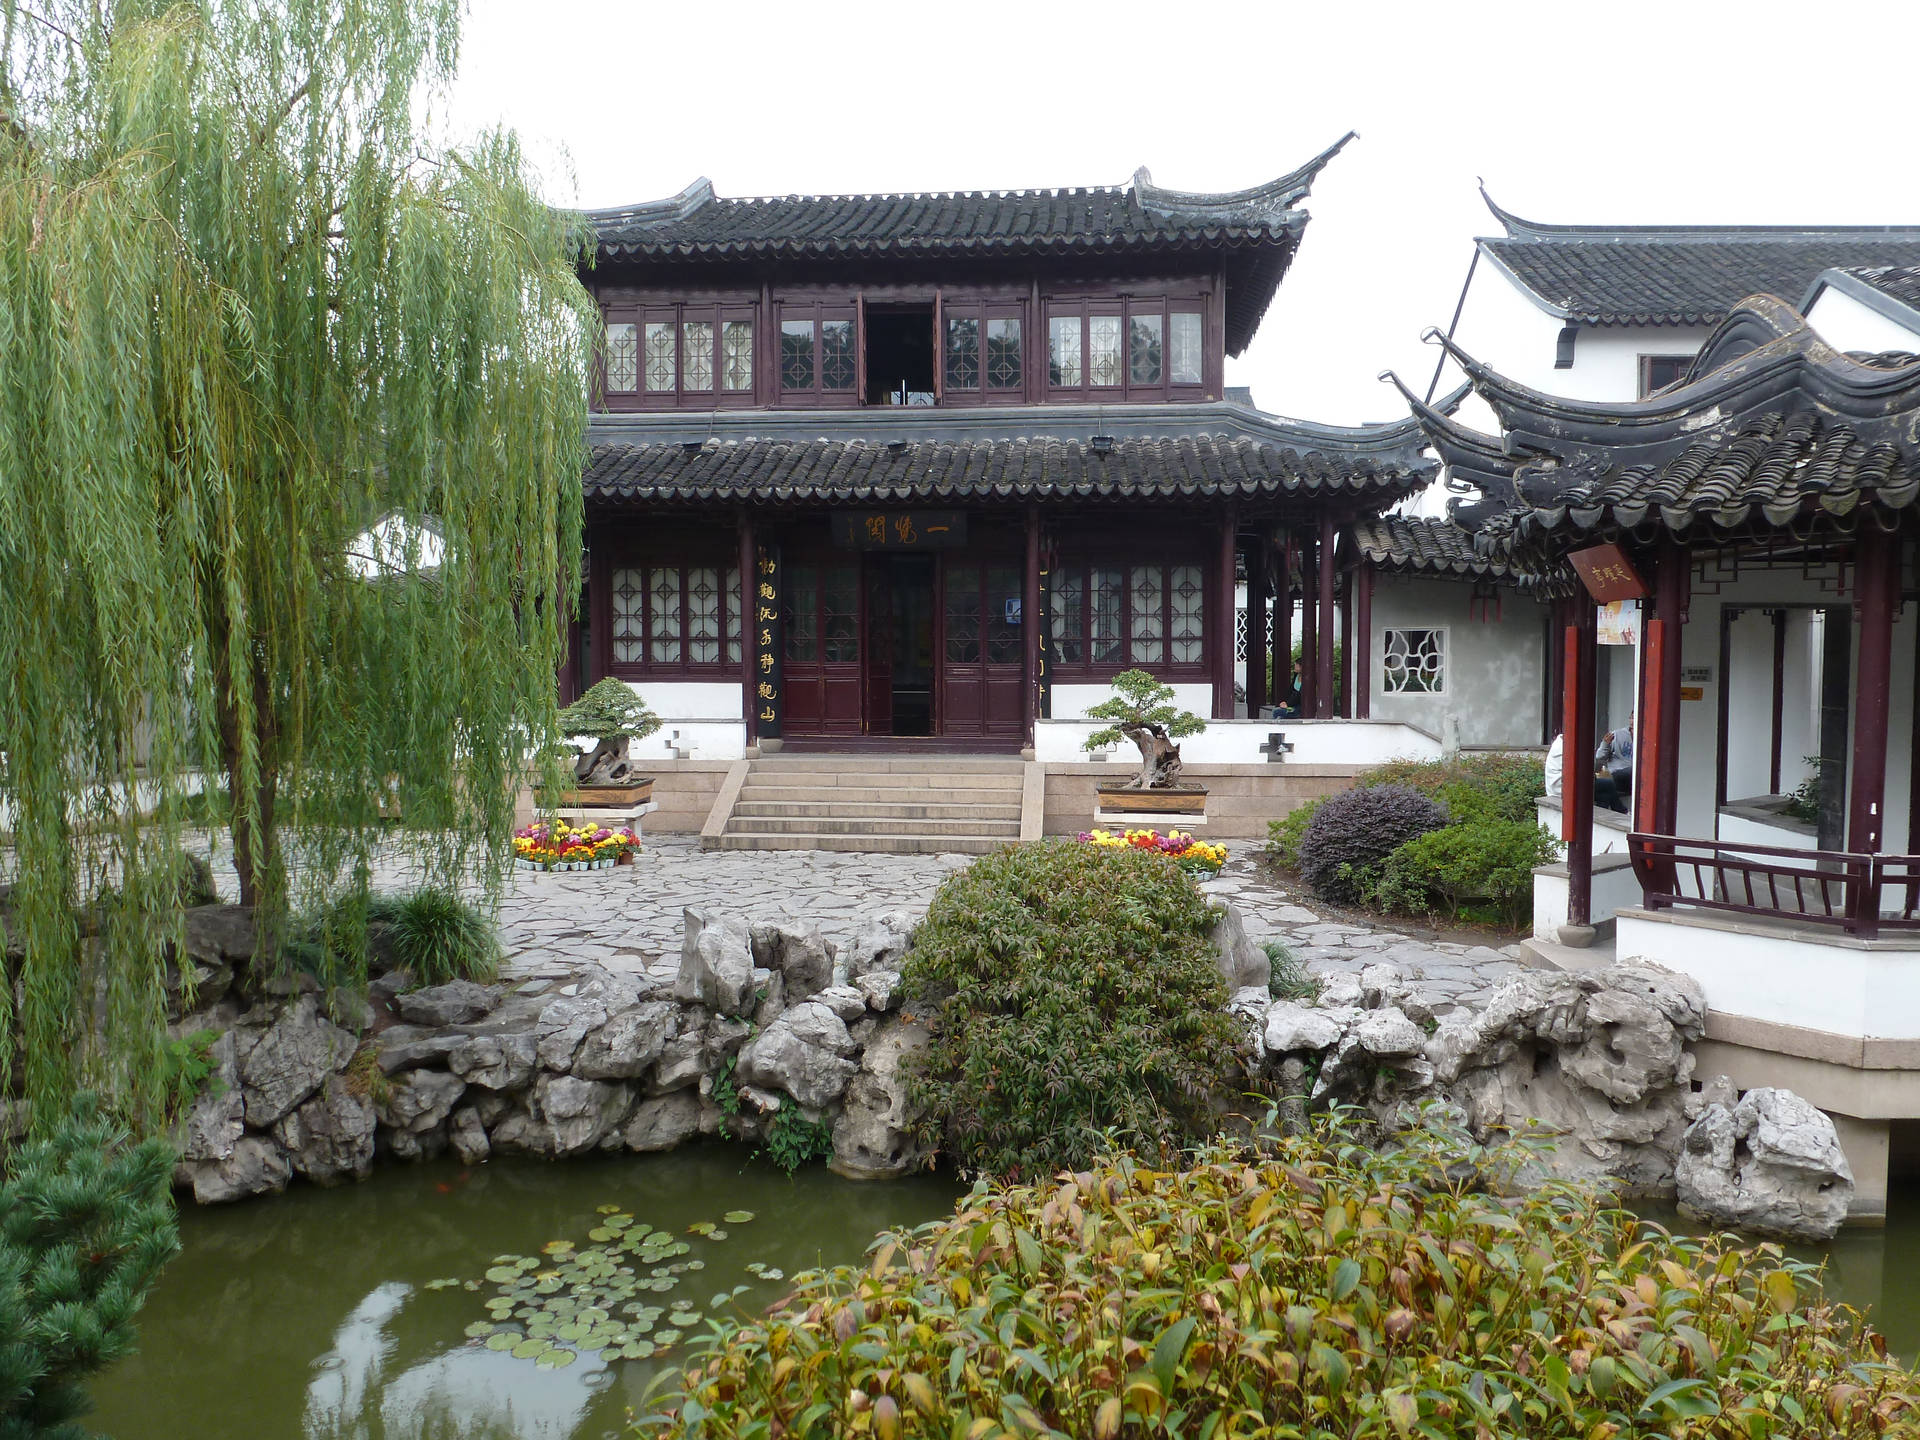 Nanjing Zhan Yuan Garden